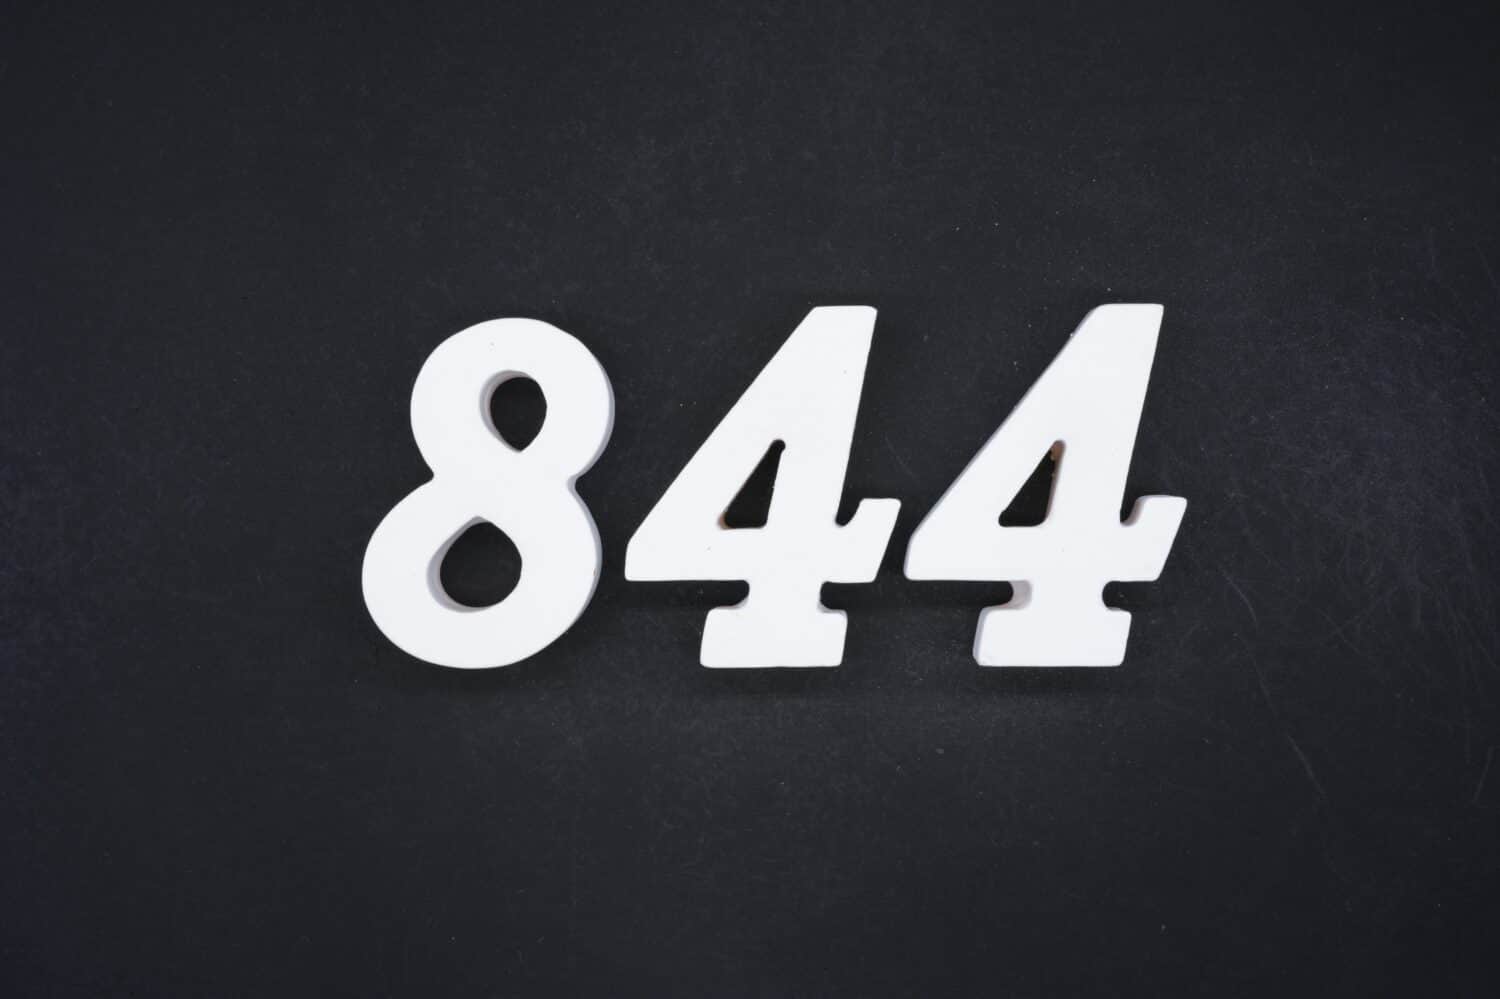 Nero per lo sfondo.  Il numero 844 è realizzato in legno verniciato bianco.